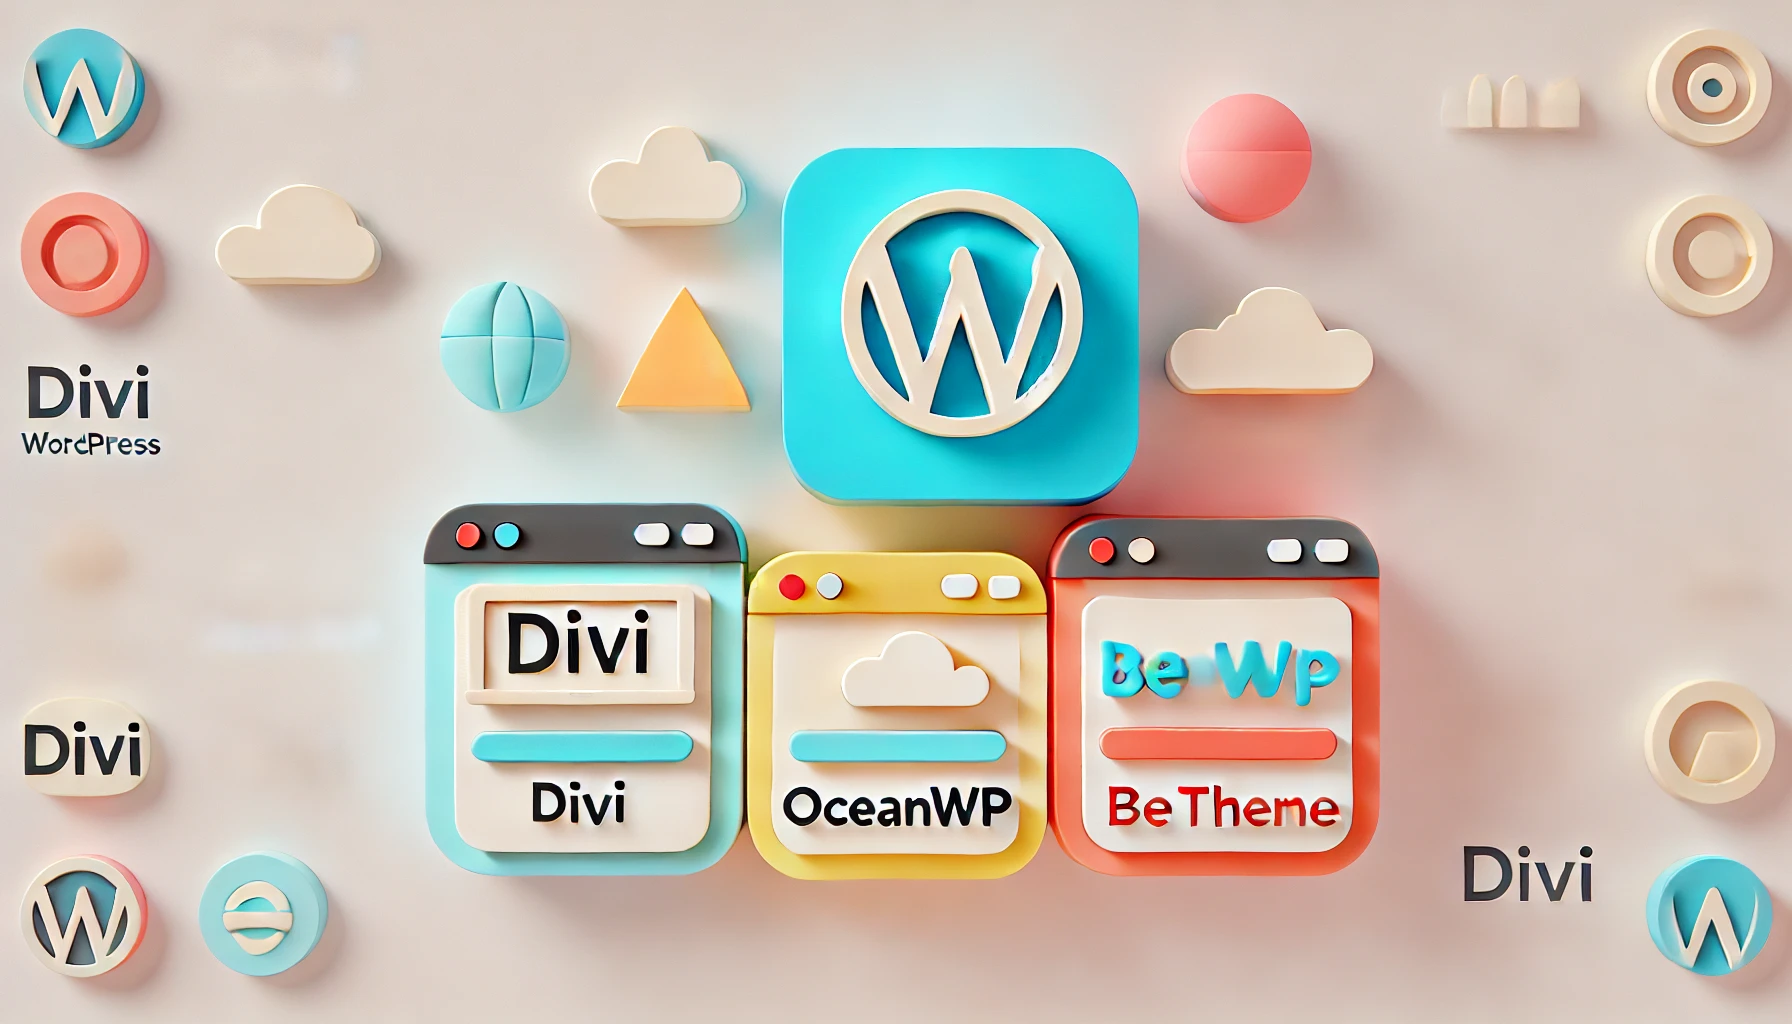 Comparación de tres impresionantes temas de WordPress: Divi, OceanWP y Betheme